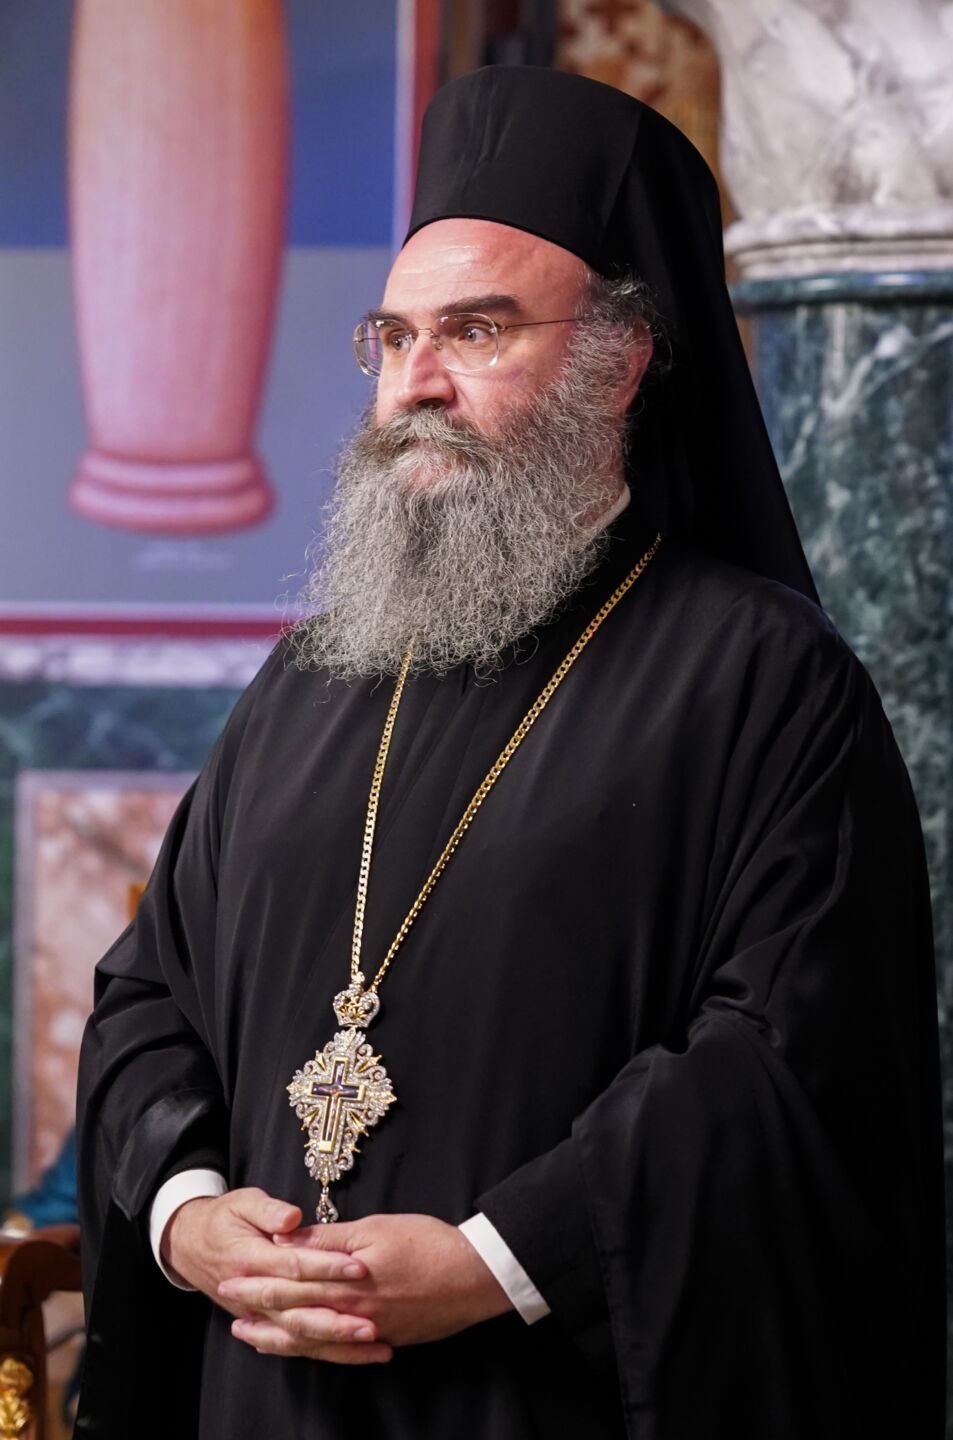 Εκλογή βοηθού Επισκόπου στην Ιερά Μητρόπολη Σερβίων & Κοζάνης